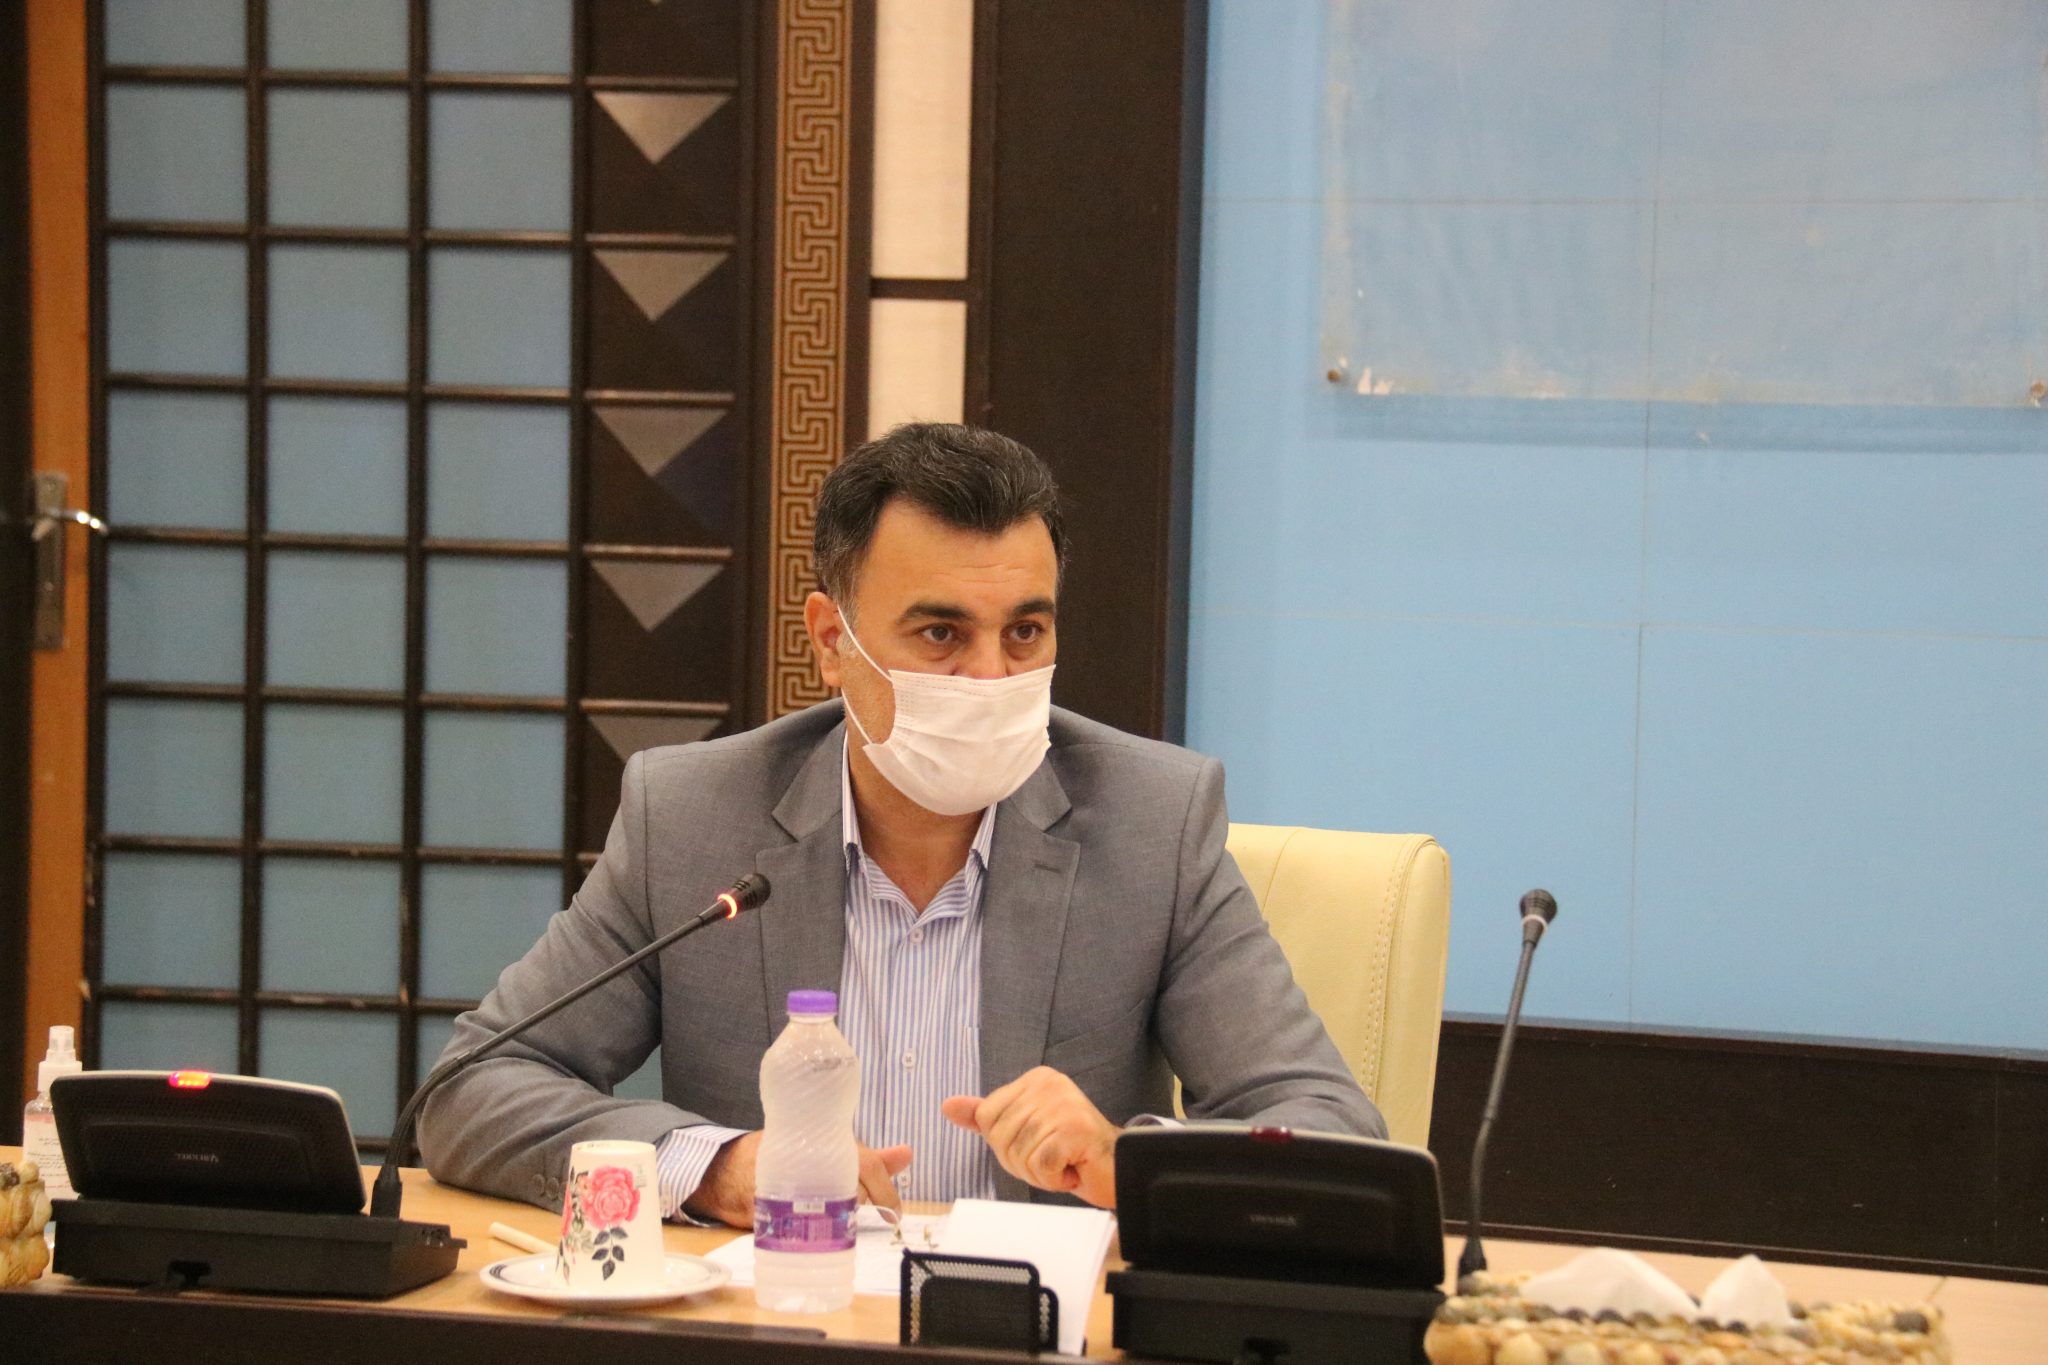 وابستگی بیش از سه هزار شغل در استان بوشهر به بخش گردشگری